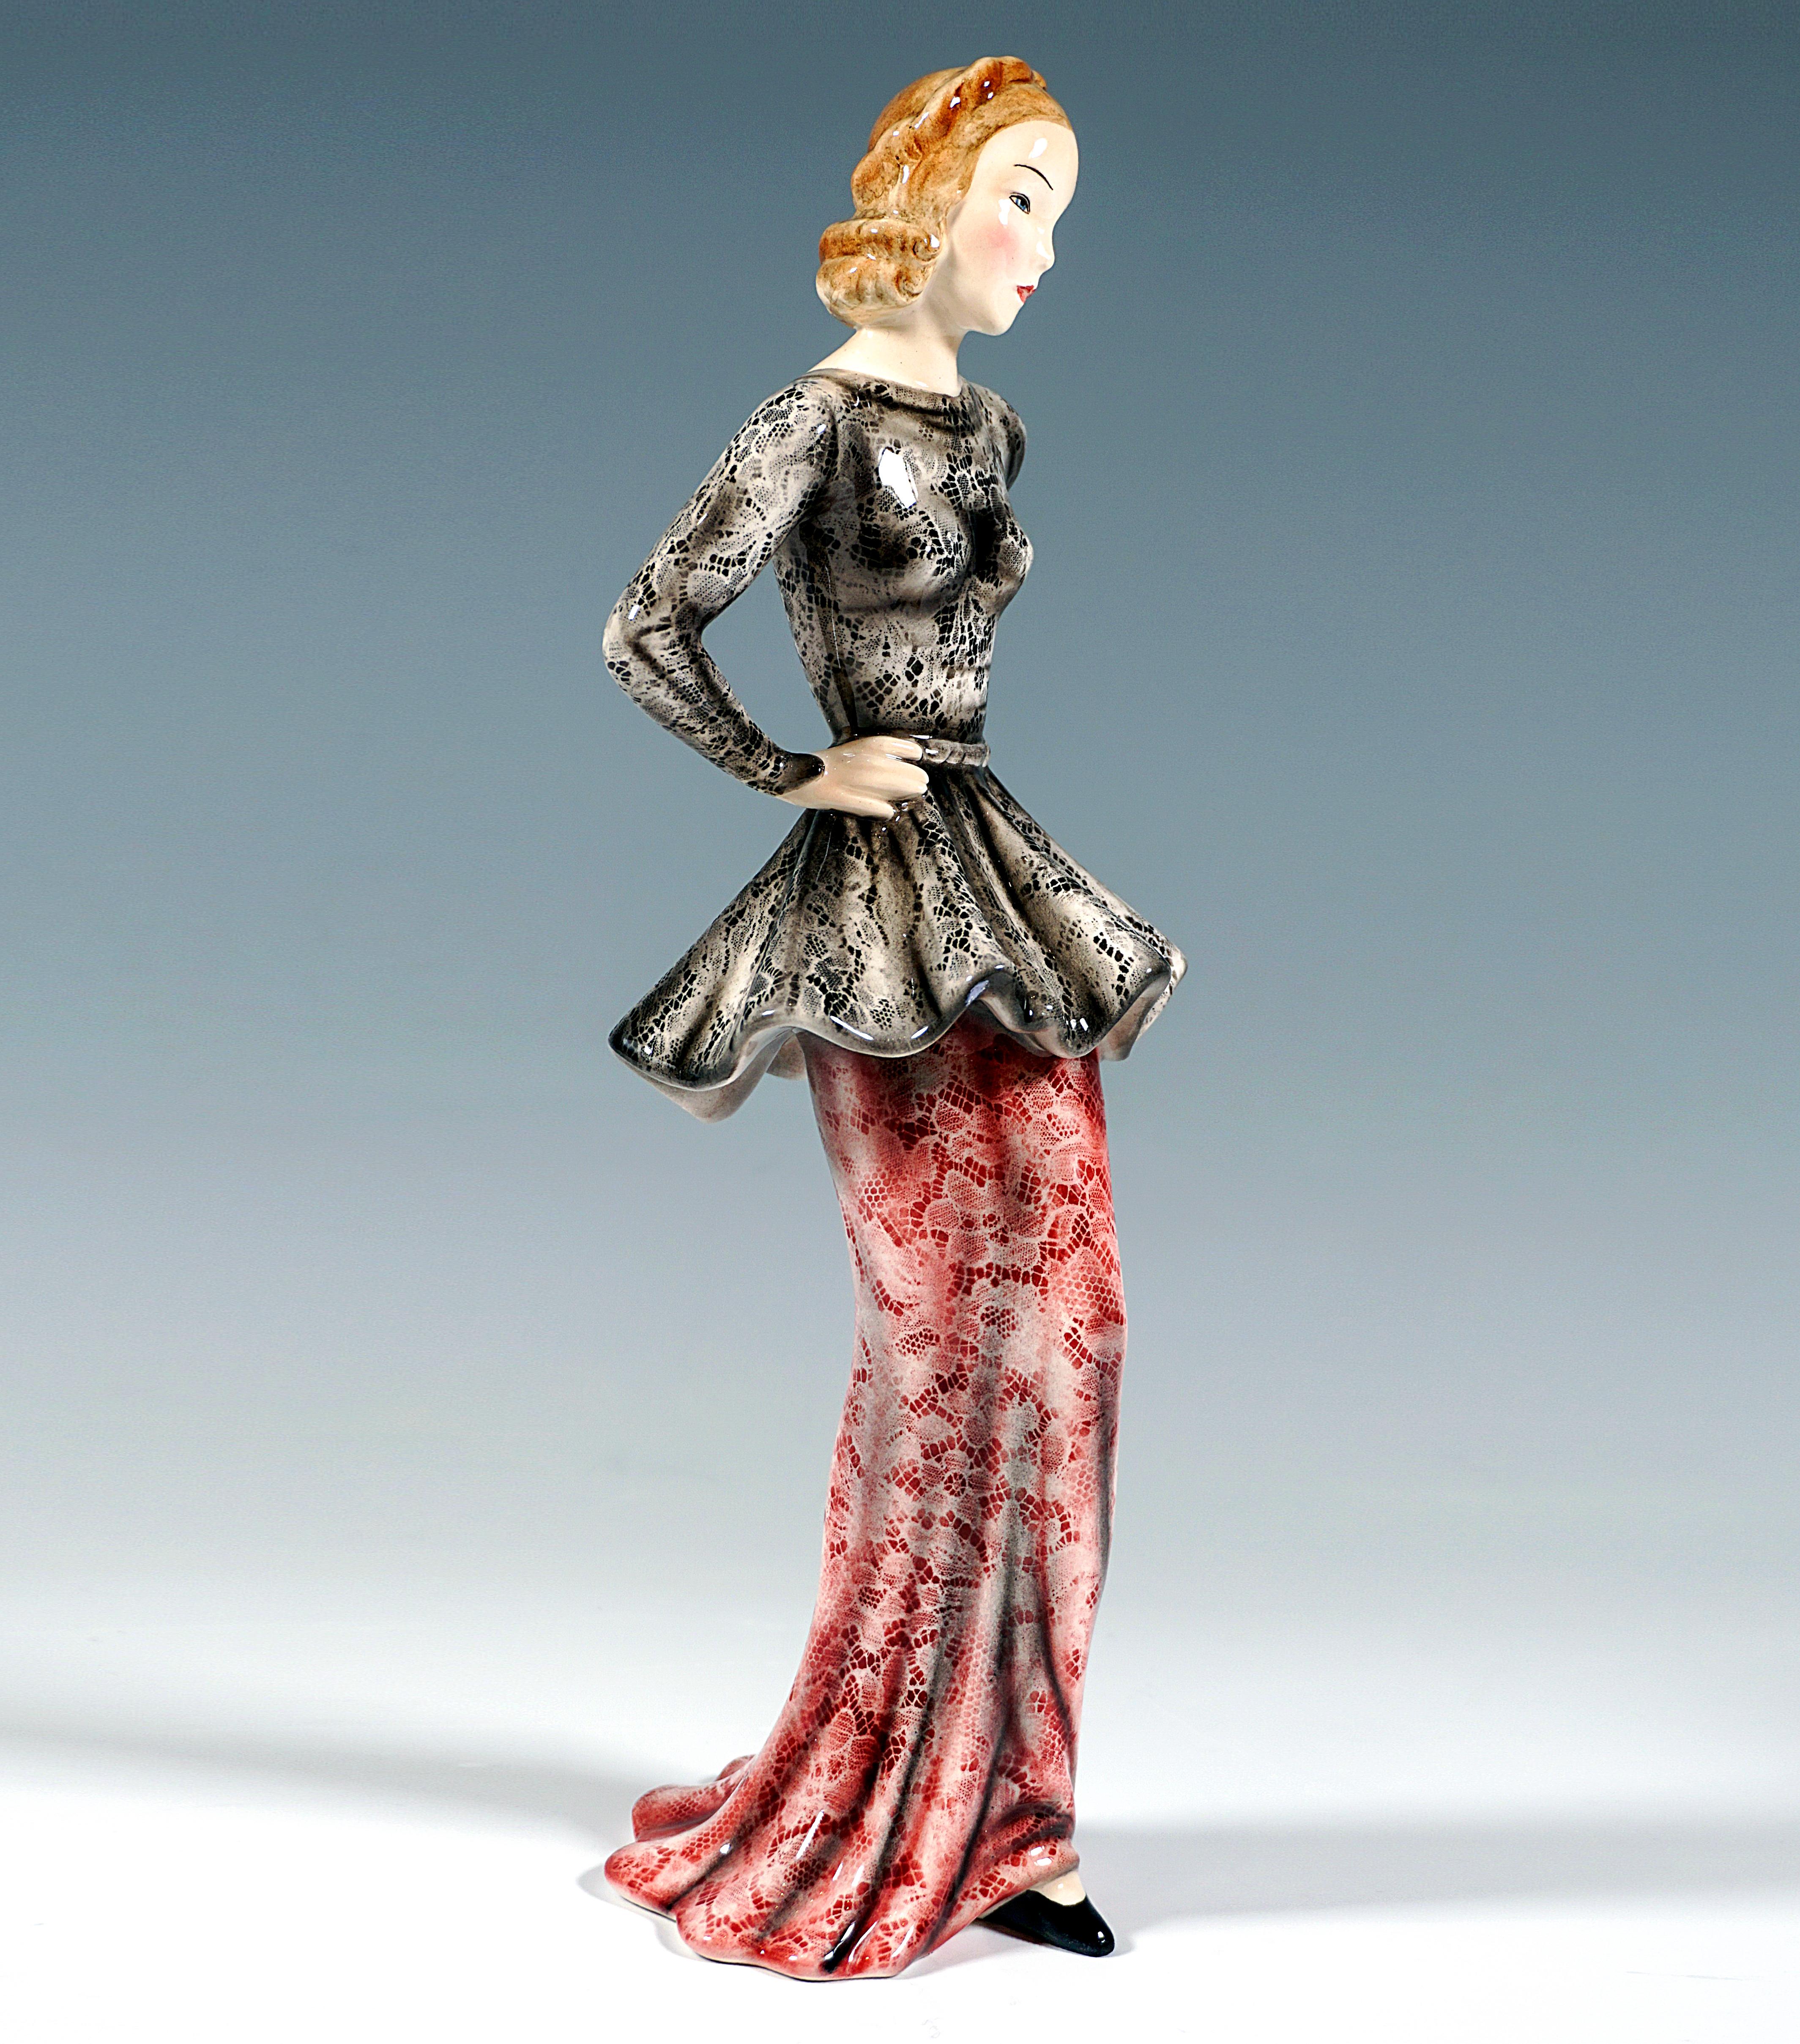 Darstellung einer eleganten, modischen Dame in langem, engem Spitzenrock in Rot mit schwarzem und weißem, hinten tief ausgeschnittenem, tailliertem Oberteil, die Arme auf die Hüften gestützt, ihr spitzer schwarzer Schuh ragt vorne unter dem Gewand